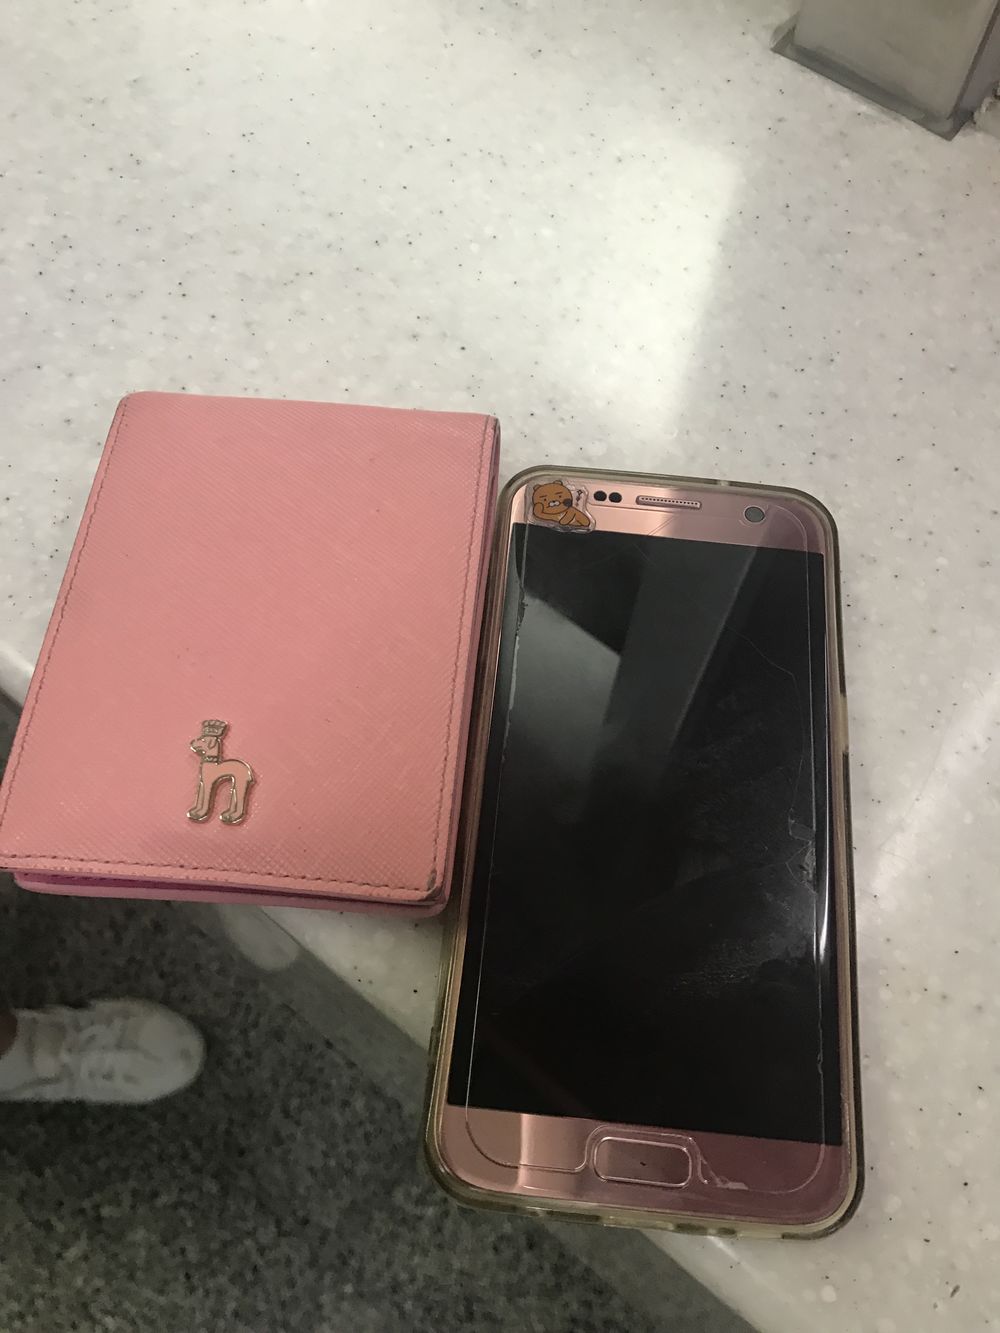 IMG_7851.JPG : 장전역에서 분홍지갑과 휴대폰 주웠습니다!